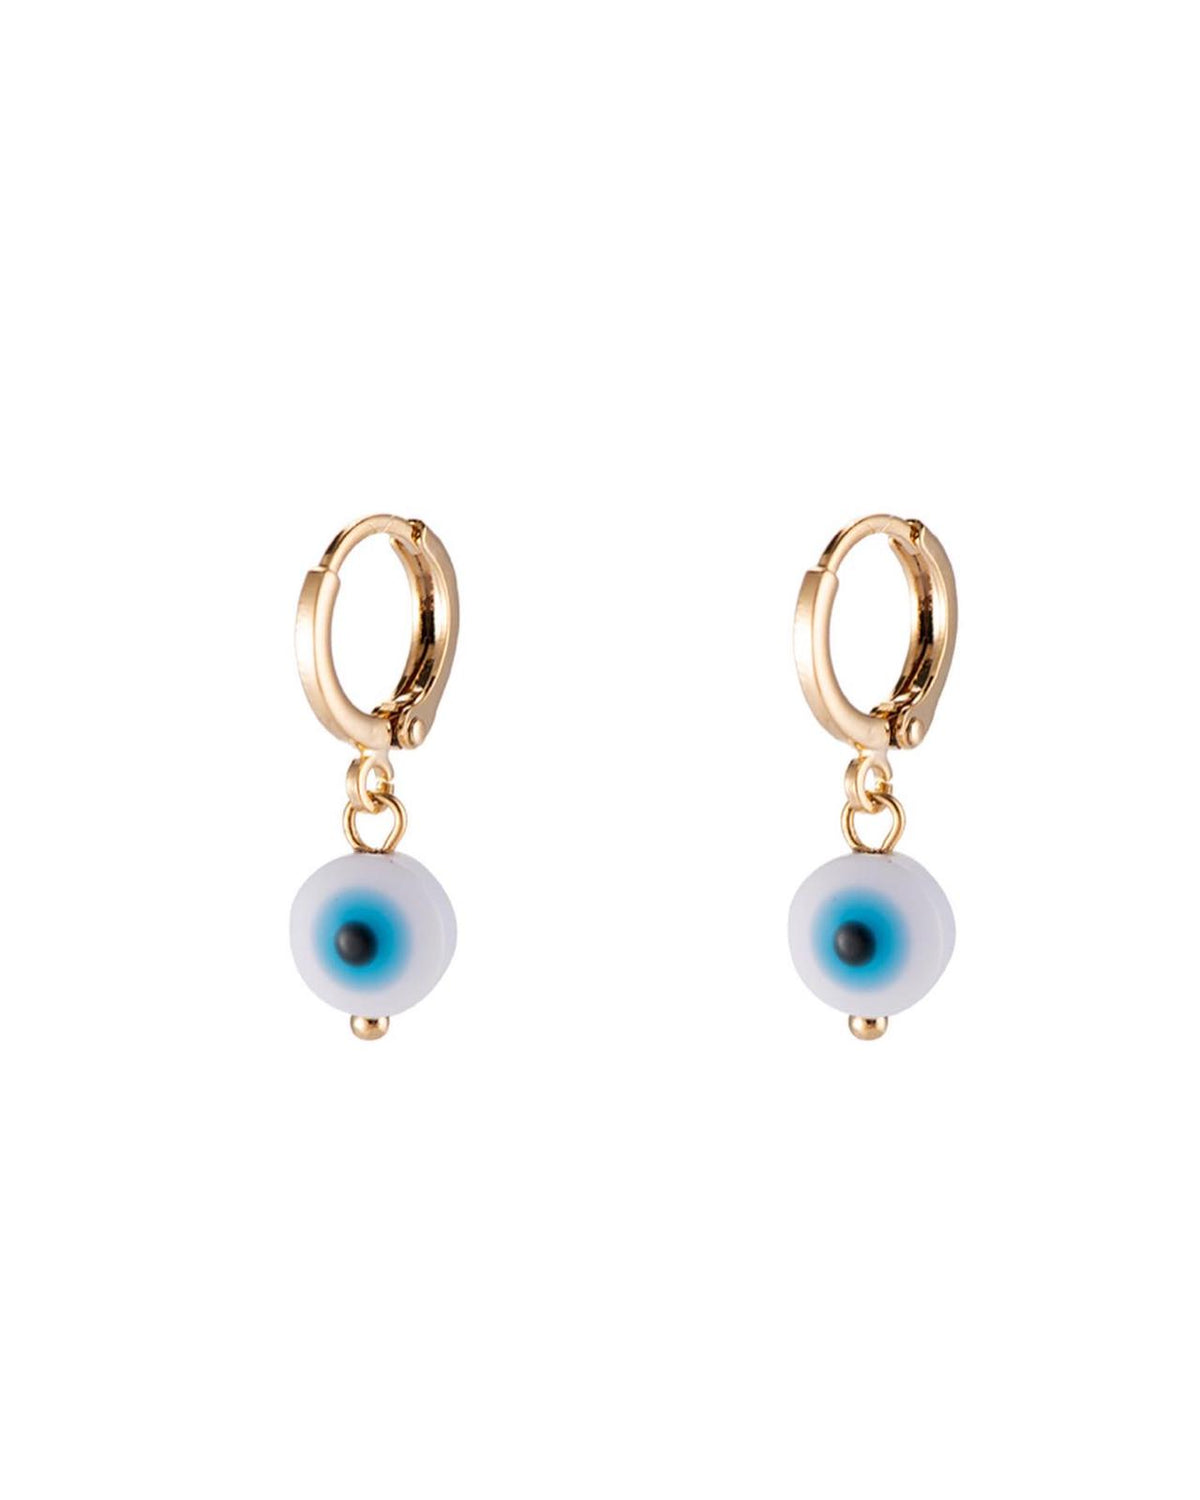 Love blue-eyed small loop earrings